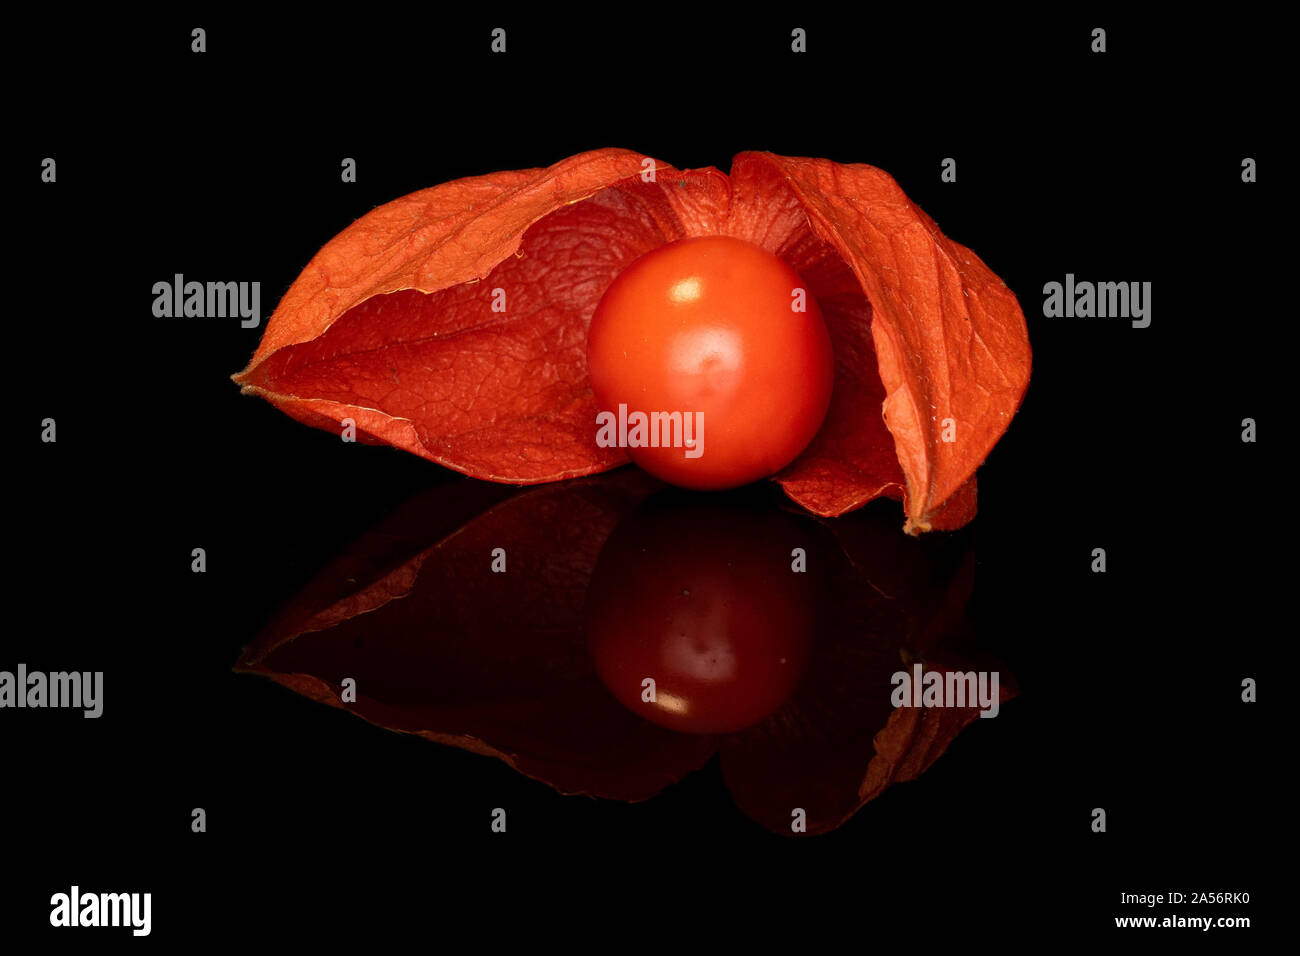 One Whole Fresh Orange Physalis Isolated On Black Glass Stock Photo Alamy